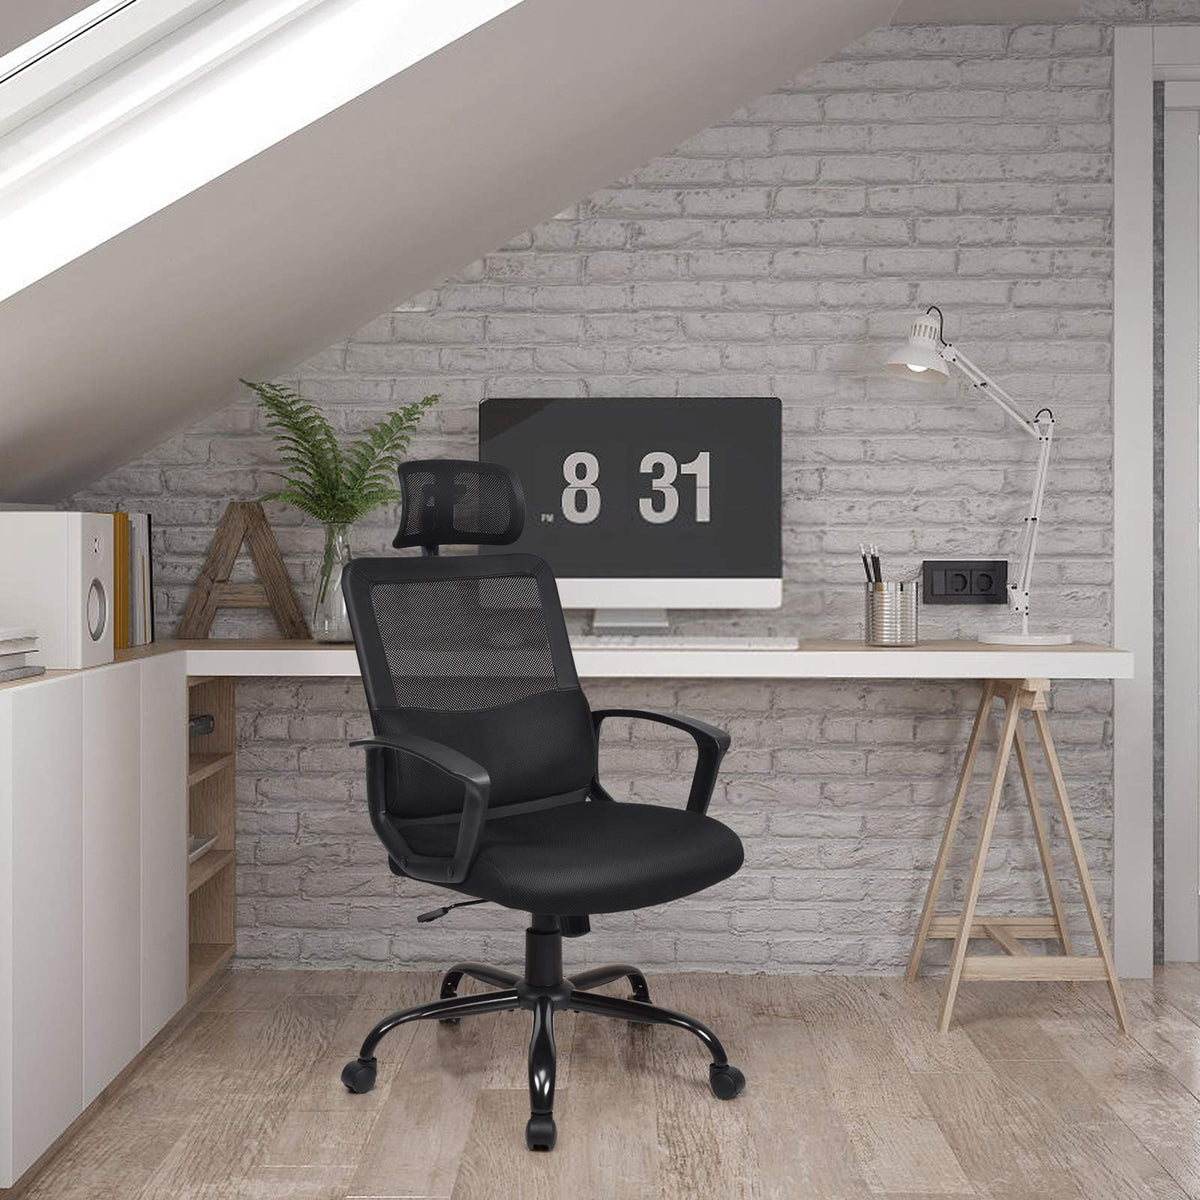 Giantex Mesh Office Chair, High-Back Computer Chair w/Headrest, Armrests & Lumbar Support, Black